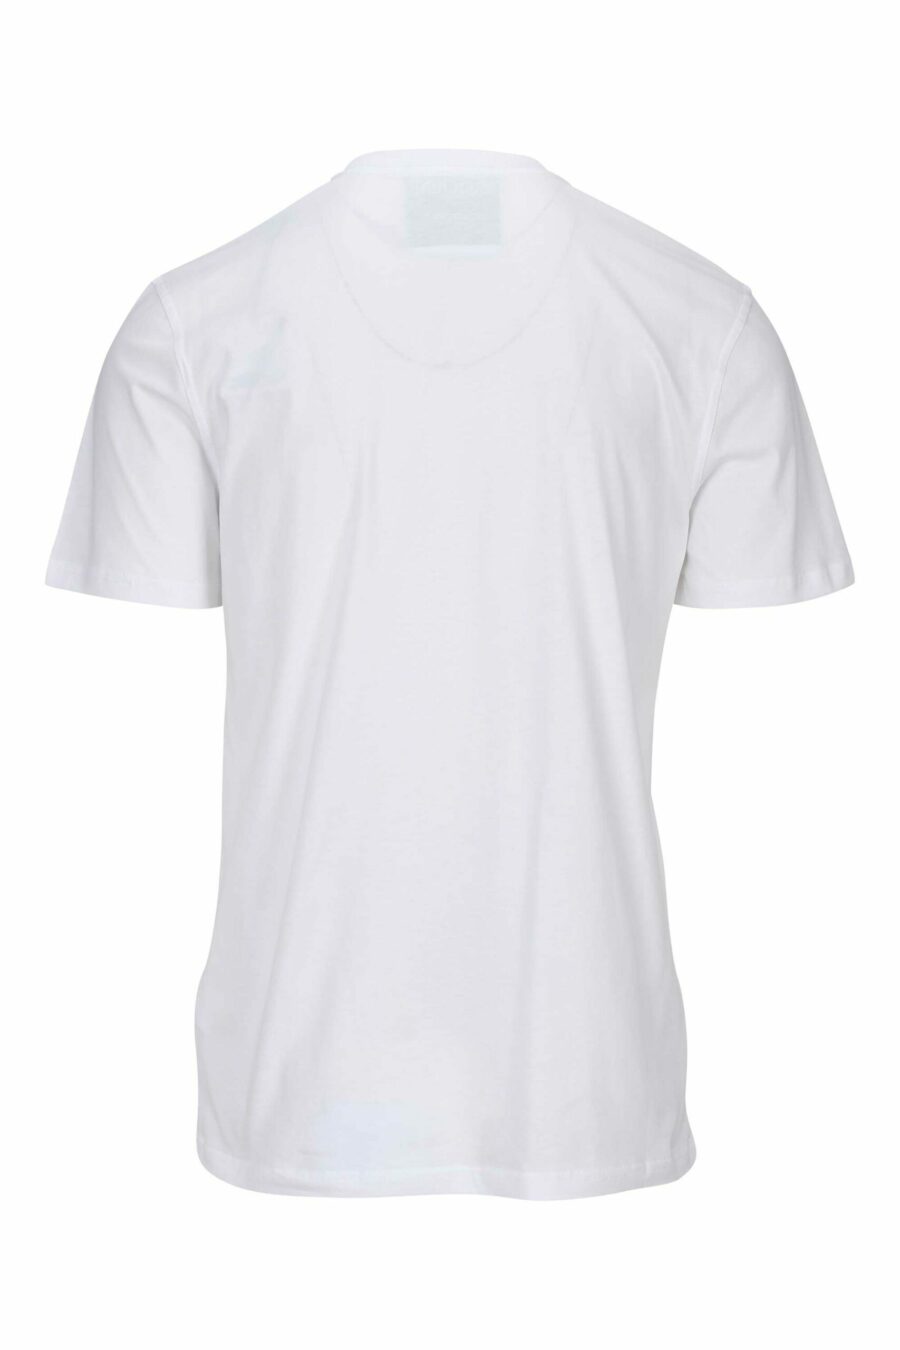 Weißes T-Shirt mit Minilog "in love we trust" - 667113765501 1 skaliert